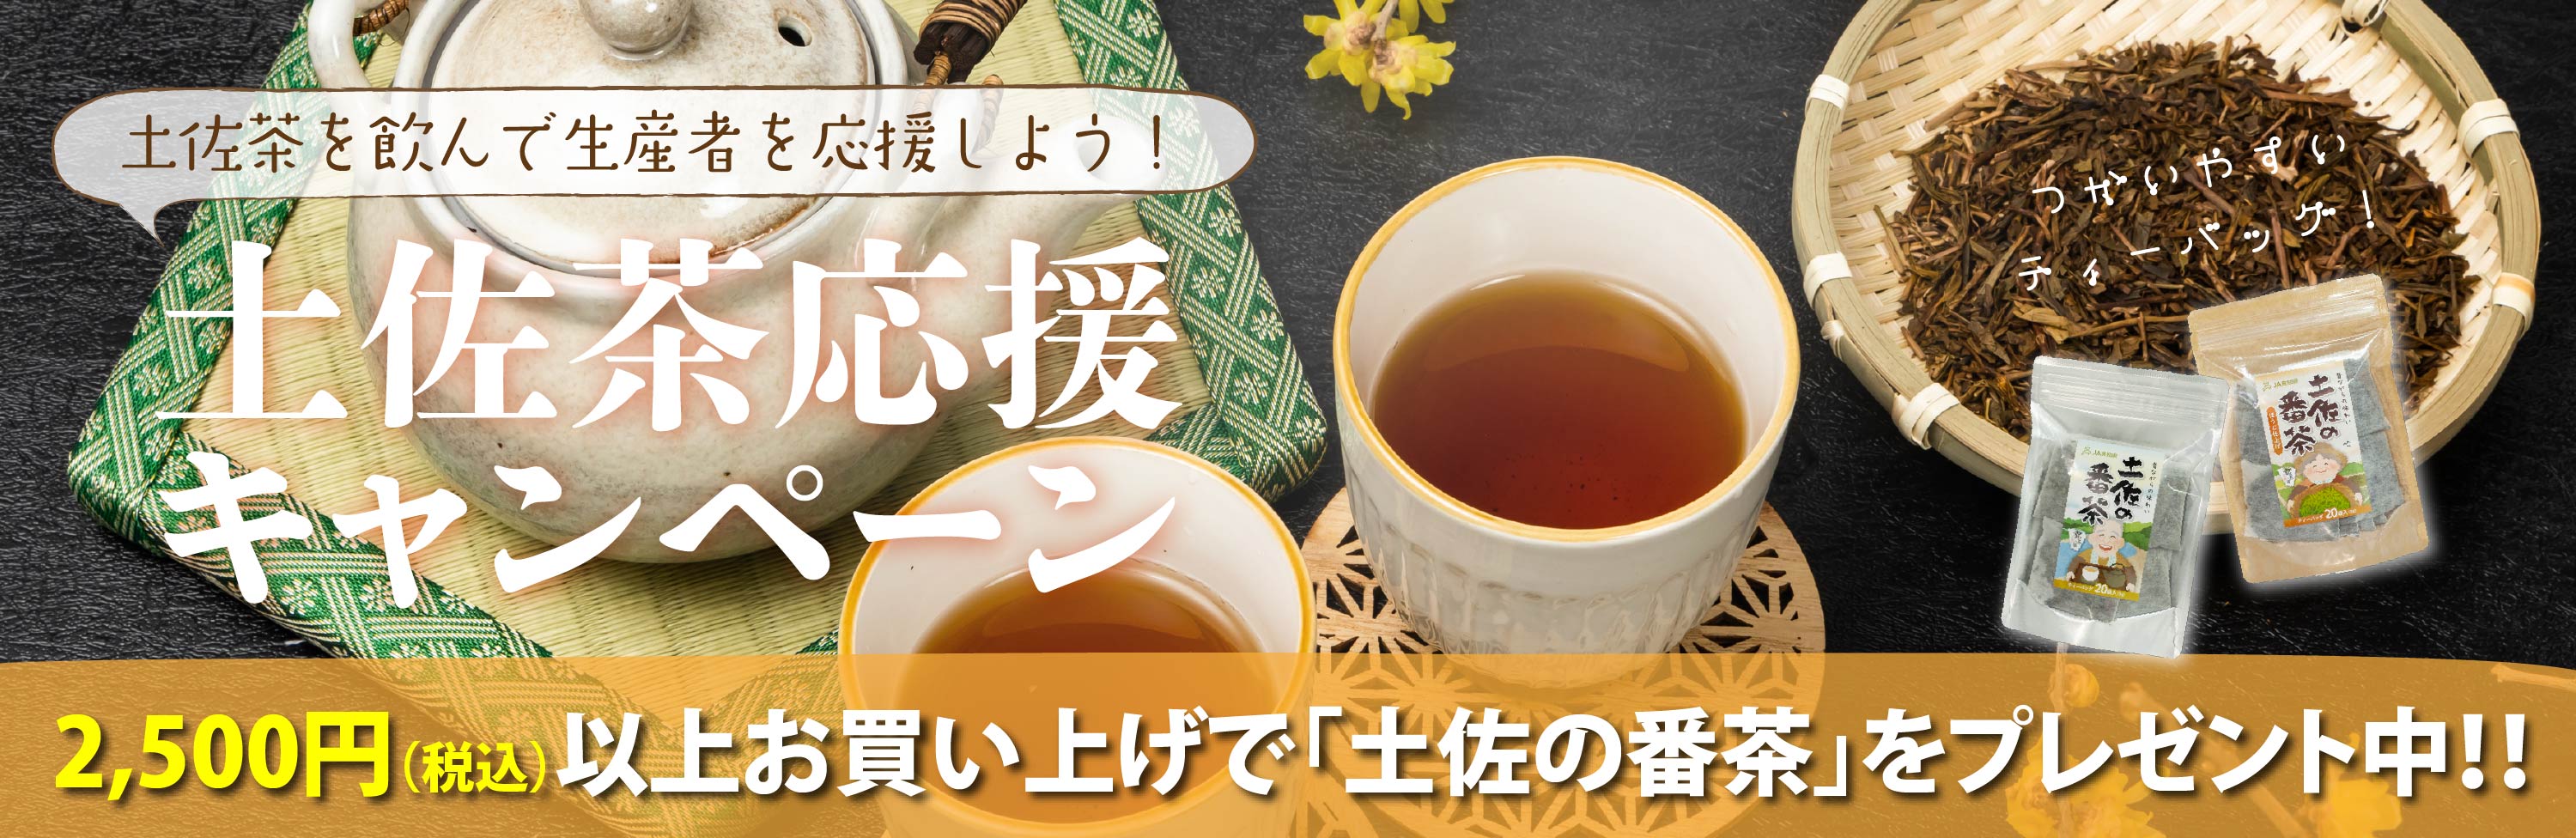 土佐茶応援キャンペーン